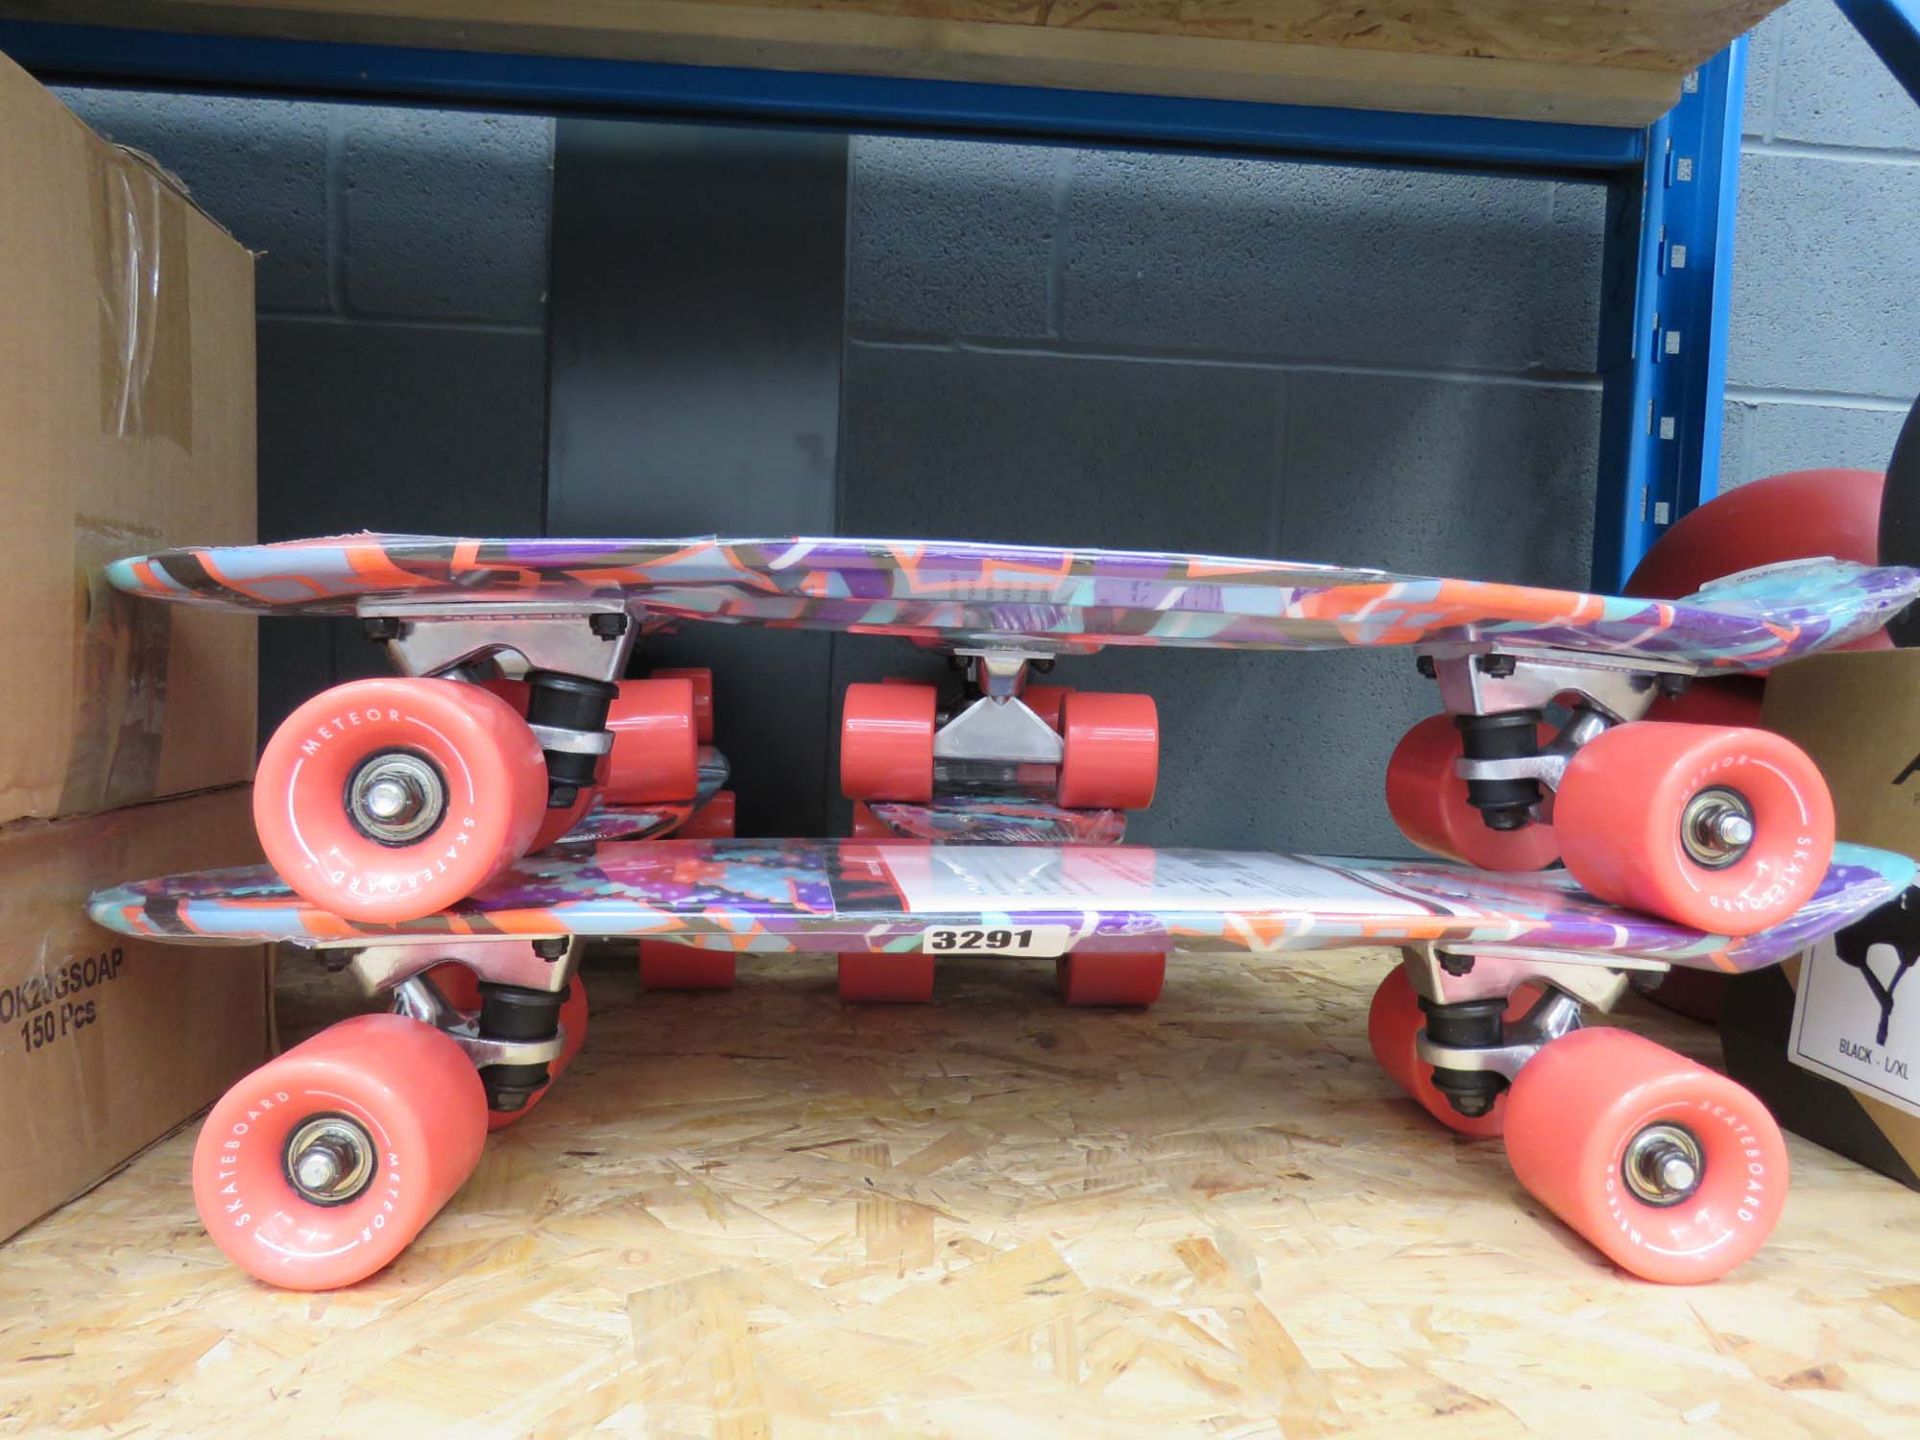 8 mini skateboards